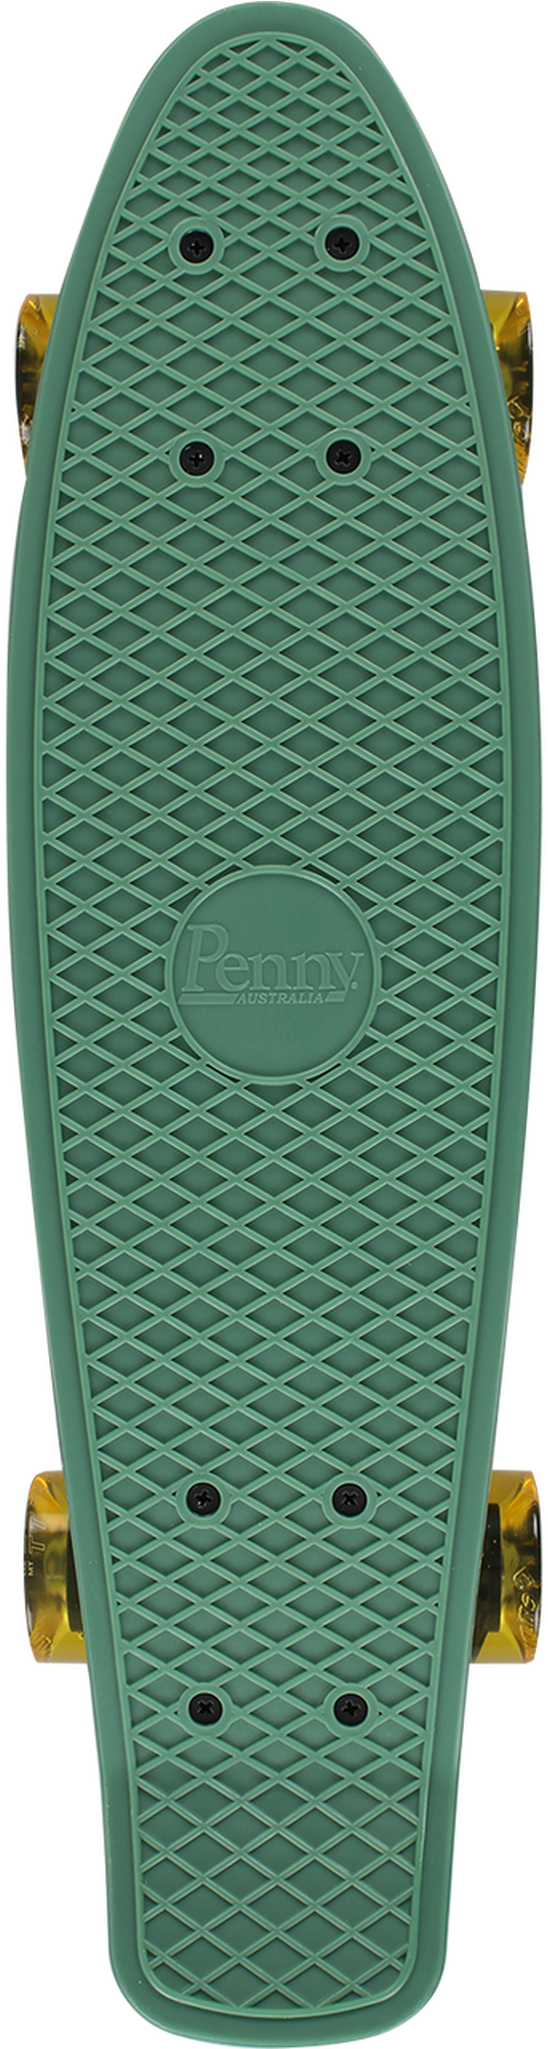 A Green Rubber Mat With A Logo